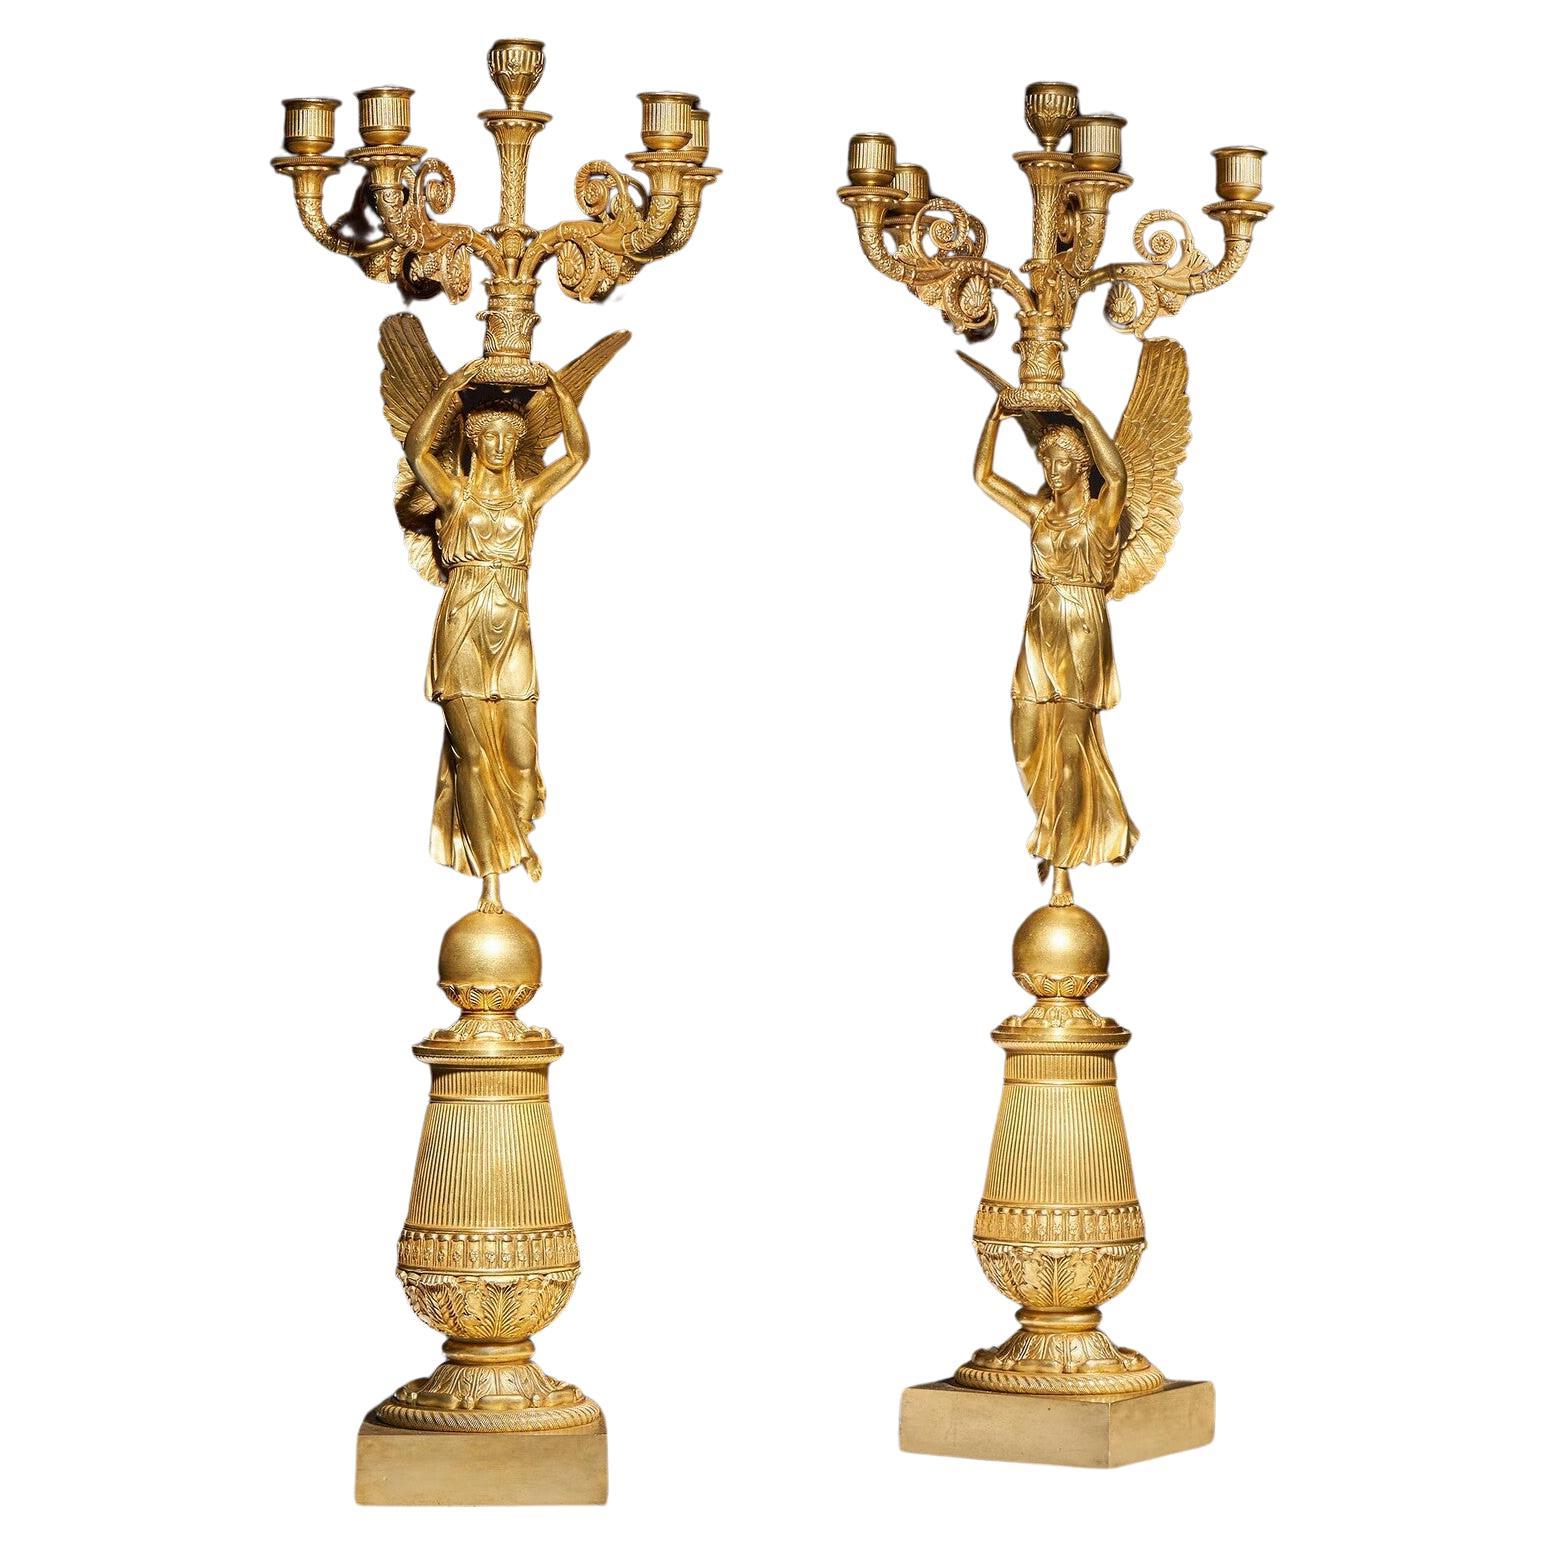 Exceptionnelle paire de candélabres en bronze doré de la fin de l'Empire français attribuée à Pier en vente